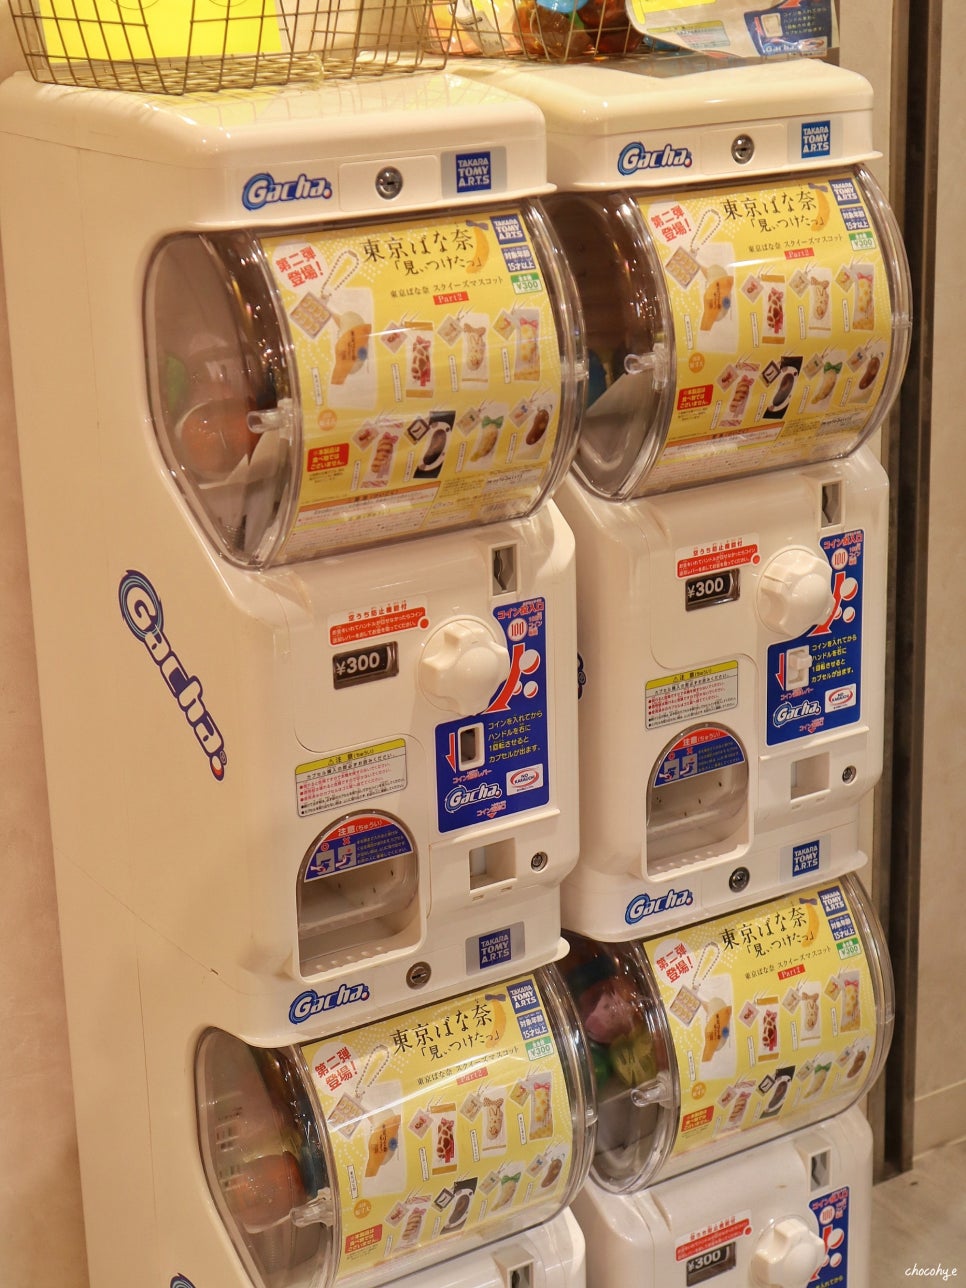 일본 도쿄 쇼핑 리스트 도쿄역 일번가 기념품 선물 캐릭터샵 포켓몬센터 등